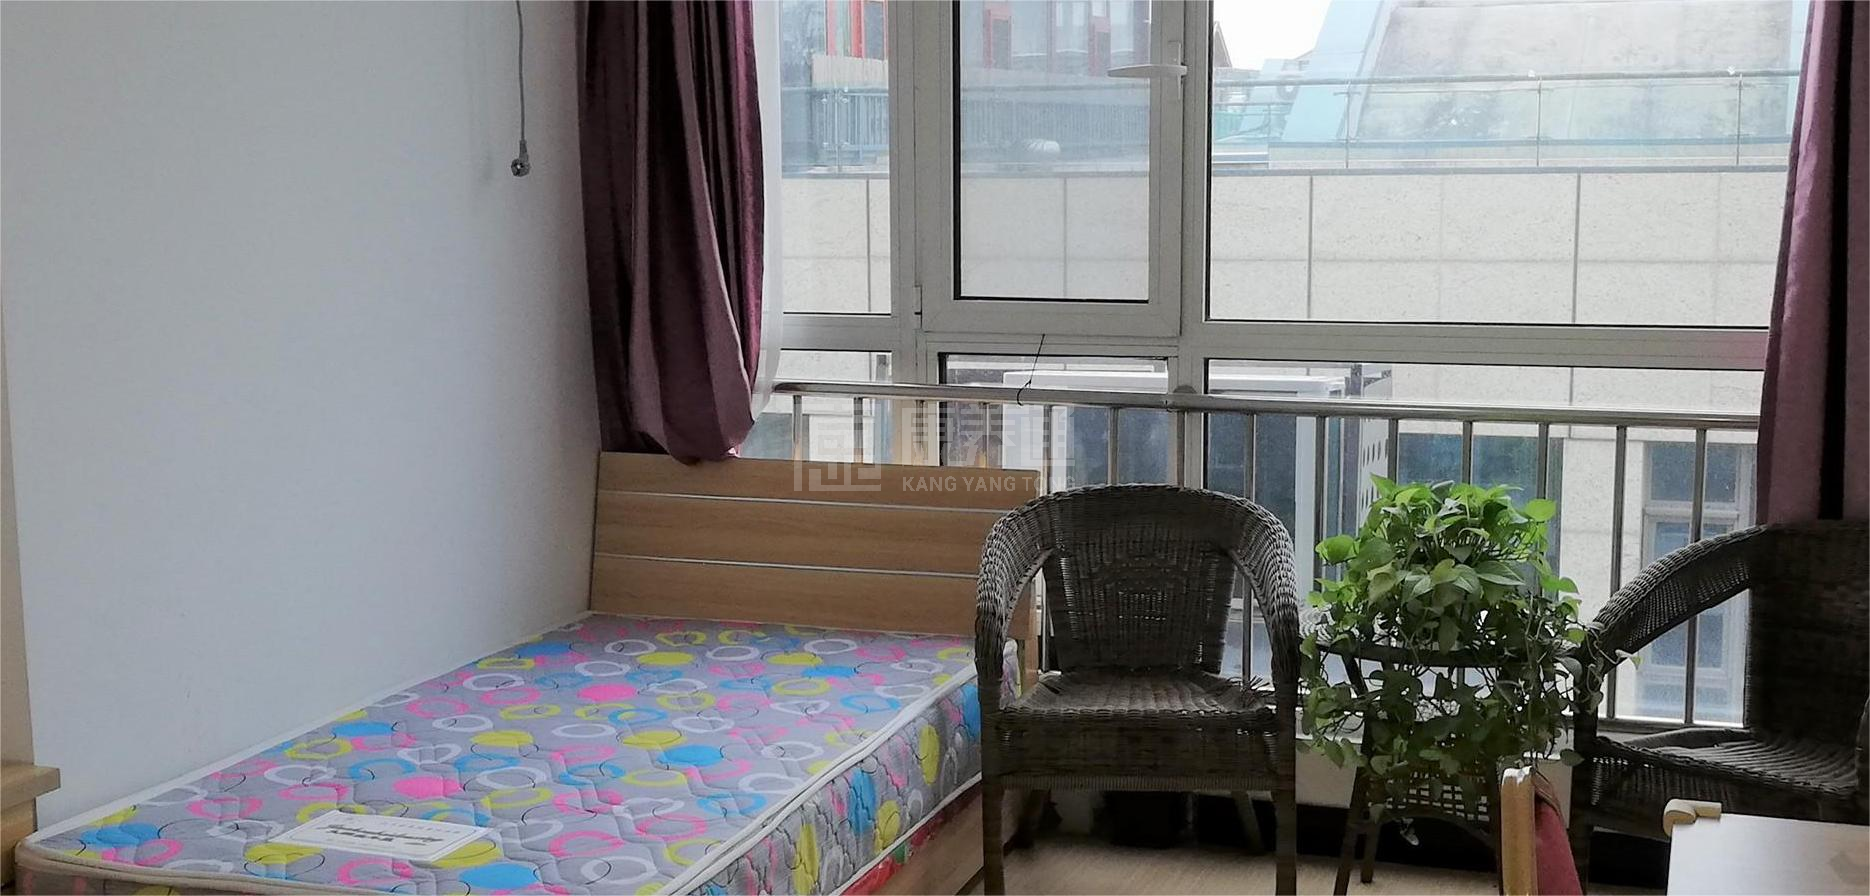 北京市朝阳区馨蘭之家老年公寓环境图-阳台